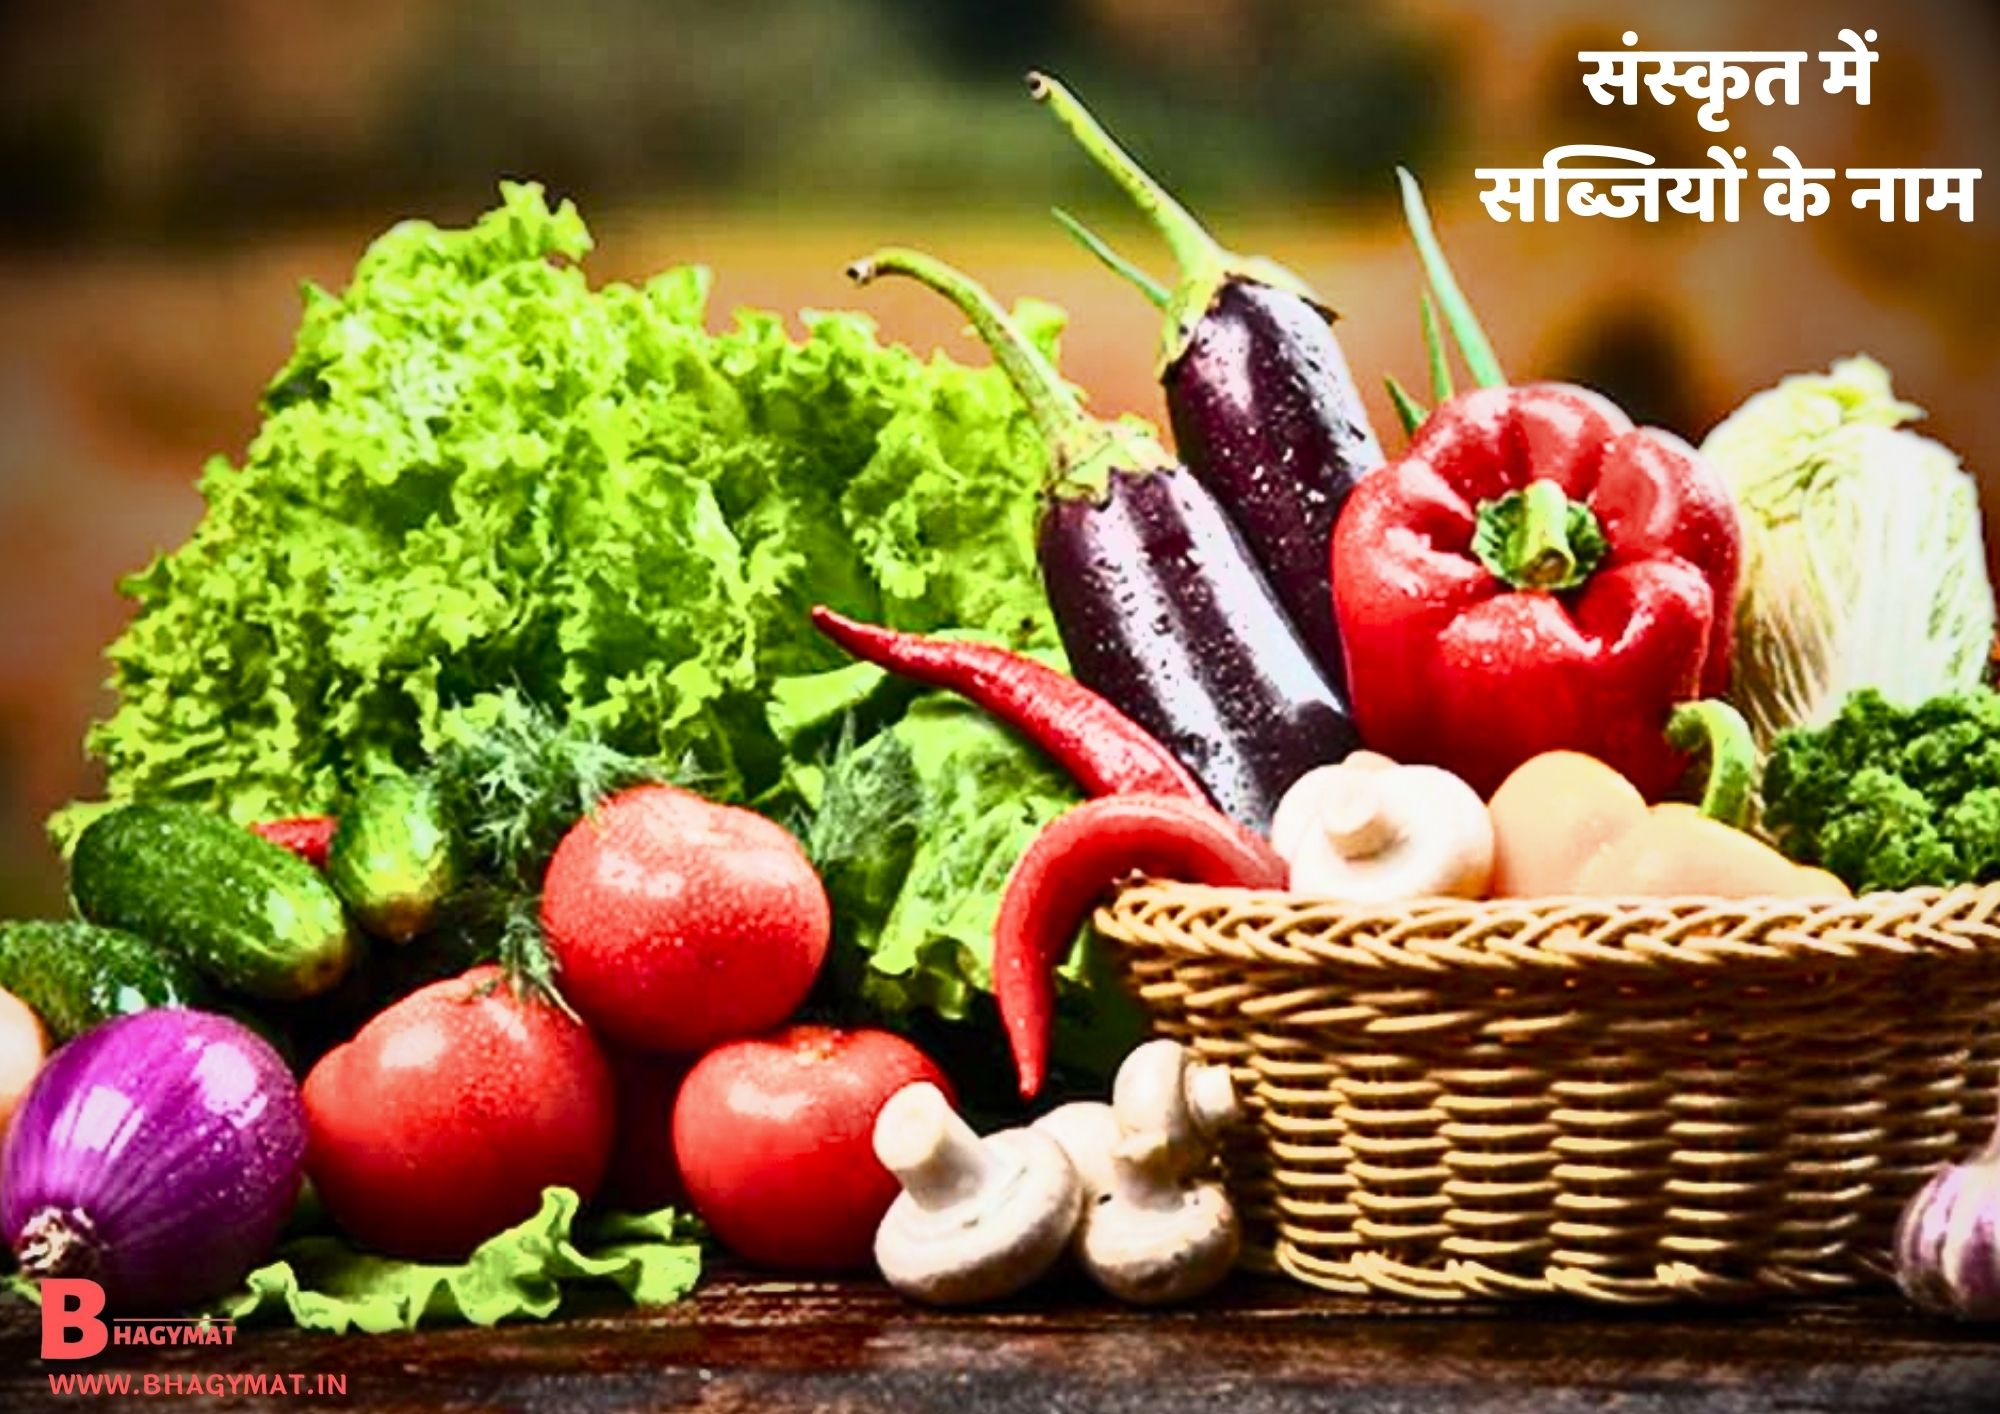 संस्कृत में सब्जियों के नाम (सब्जियों के नाम संस्कृत में) - Sabjiyon Ke Naam Sanskrit Me (Sanskrit Me Sabjiyo Ke Naam) - Sanskrit Mein Sabjiyon Ke Naam, Sabjiyon Ke Naam Sanskrit Mein